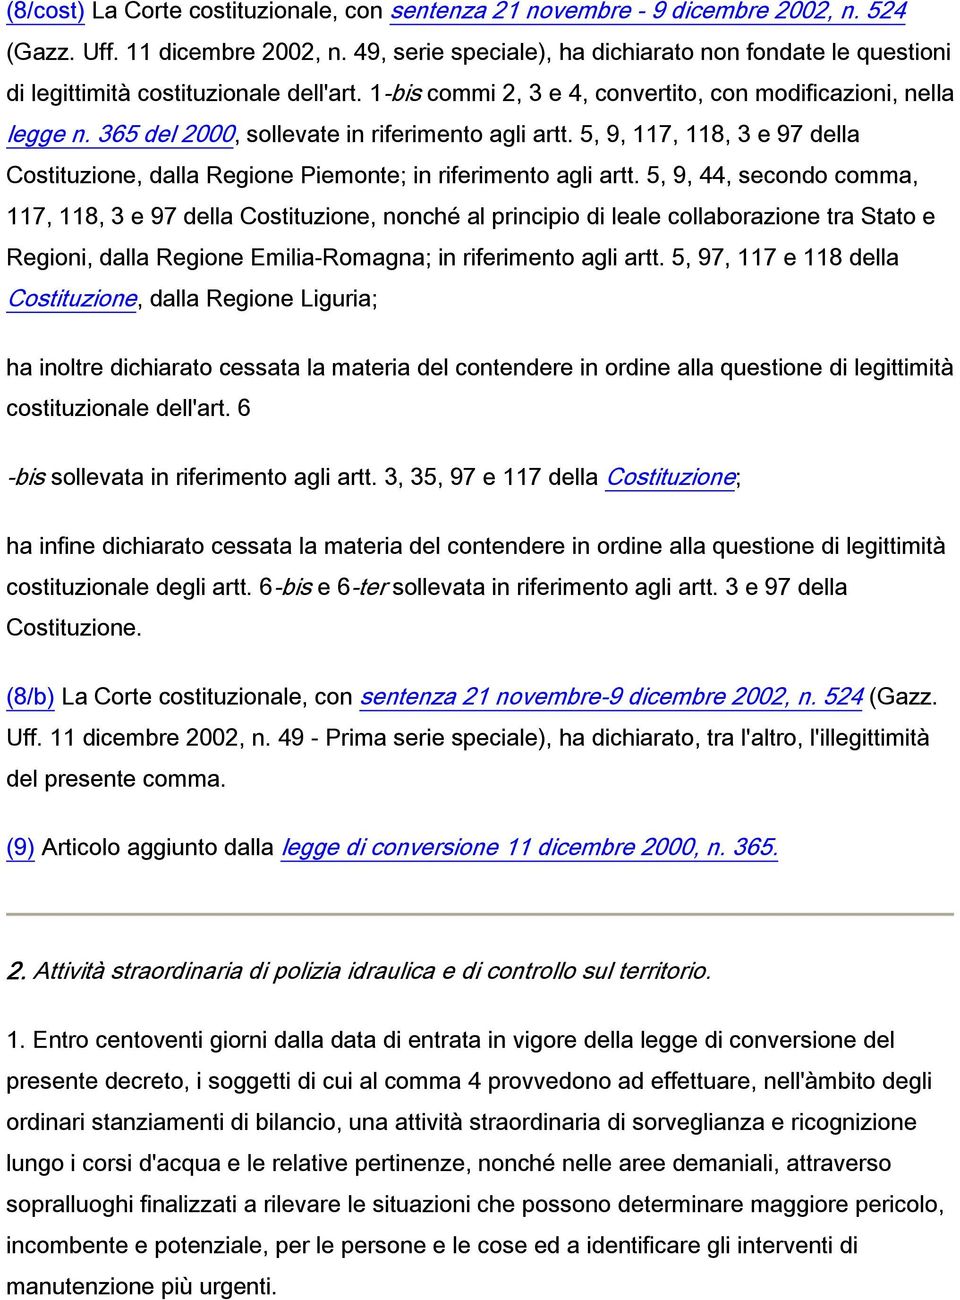 365 del 2000, sollevate in riferimento agli artt. 5, 9, 117, 118, 3 e 97 della Costituzione, dalla Regione Piemonte; in riferimento agli artt.